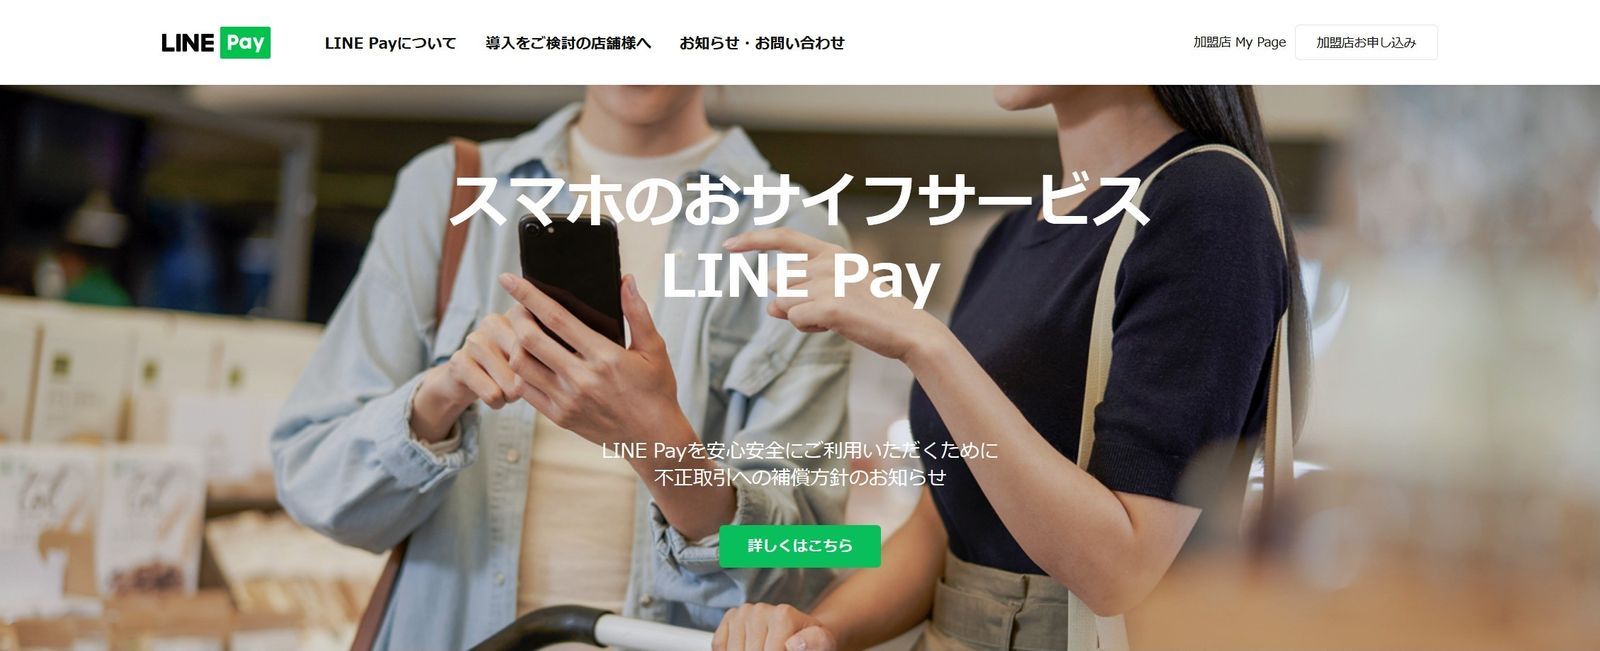 Screenshot of LINE Pay website